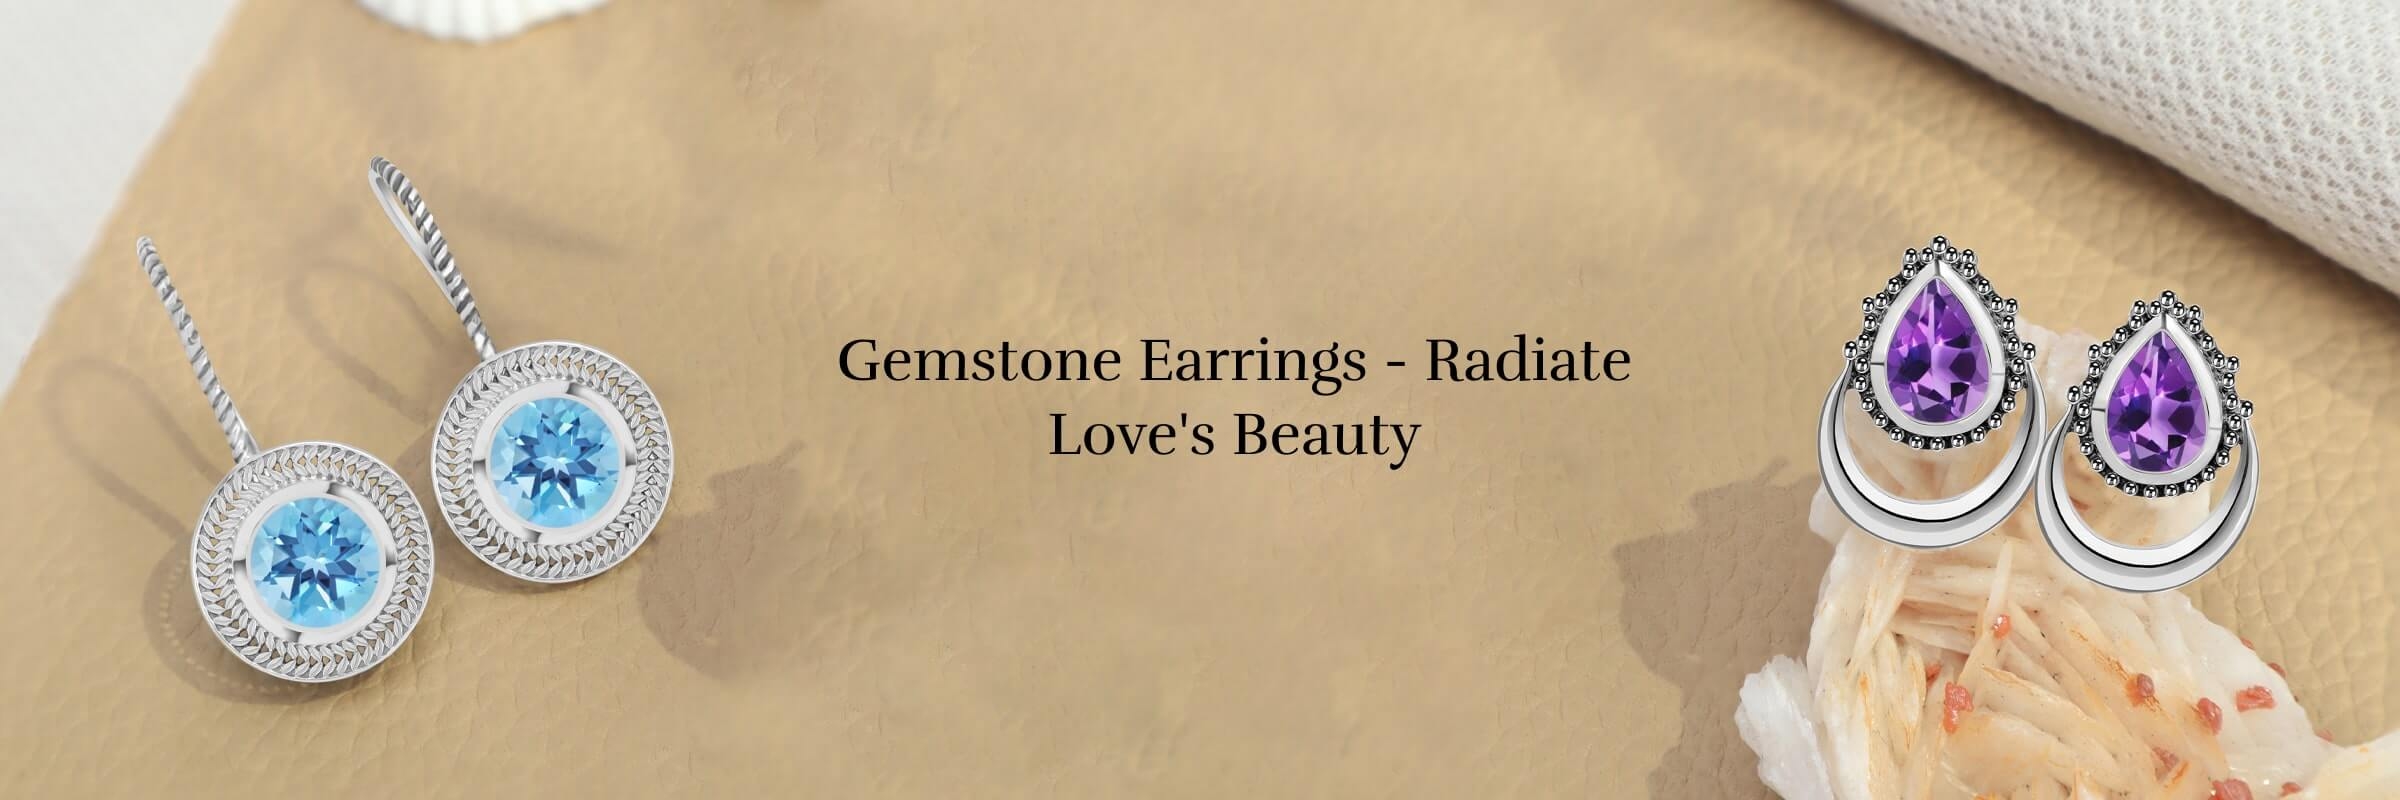 Types of Gemstone Earrings